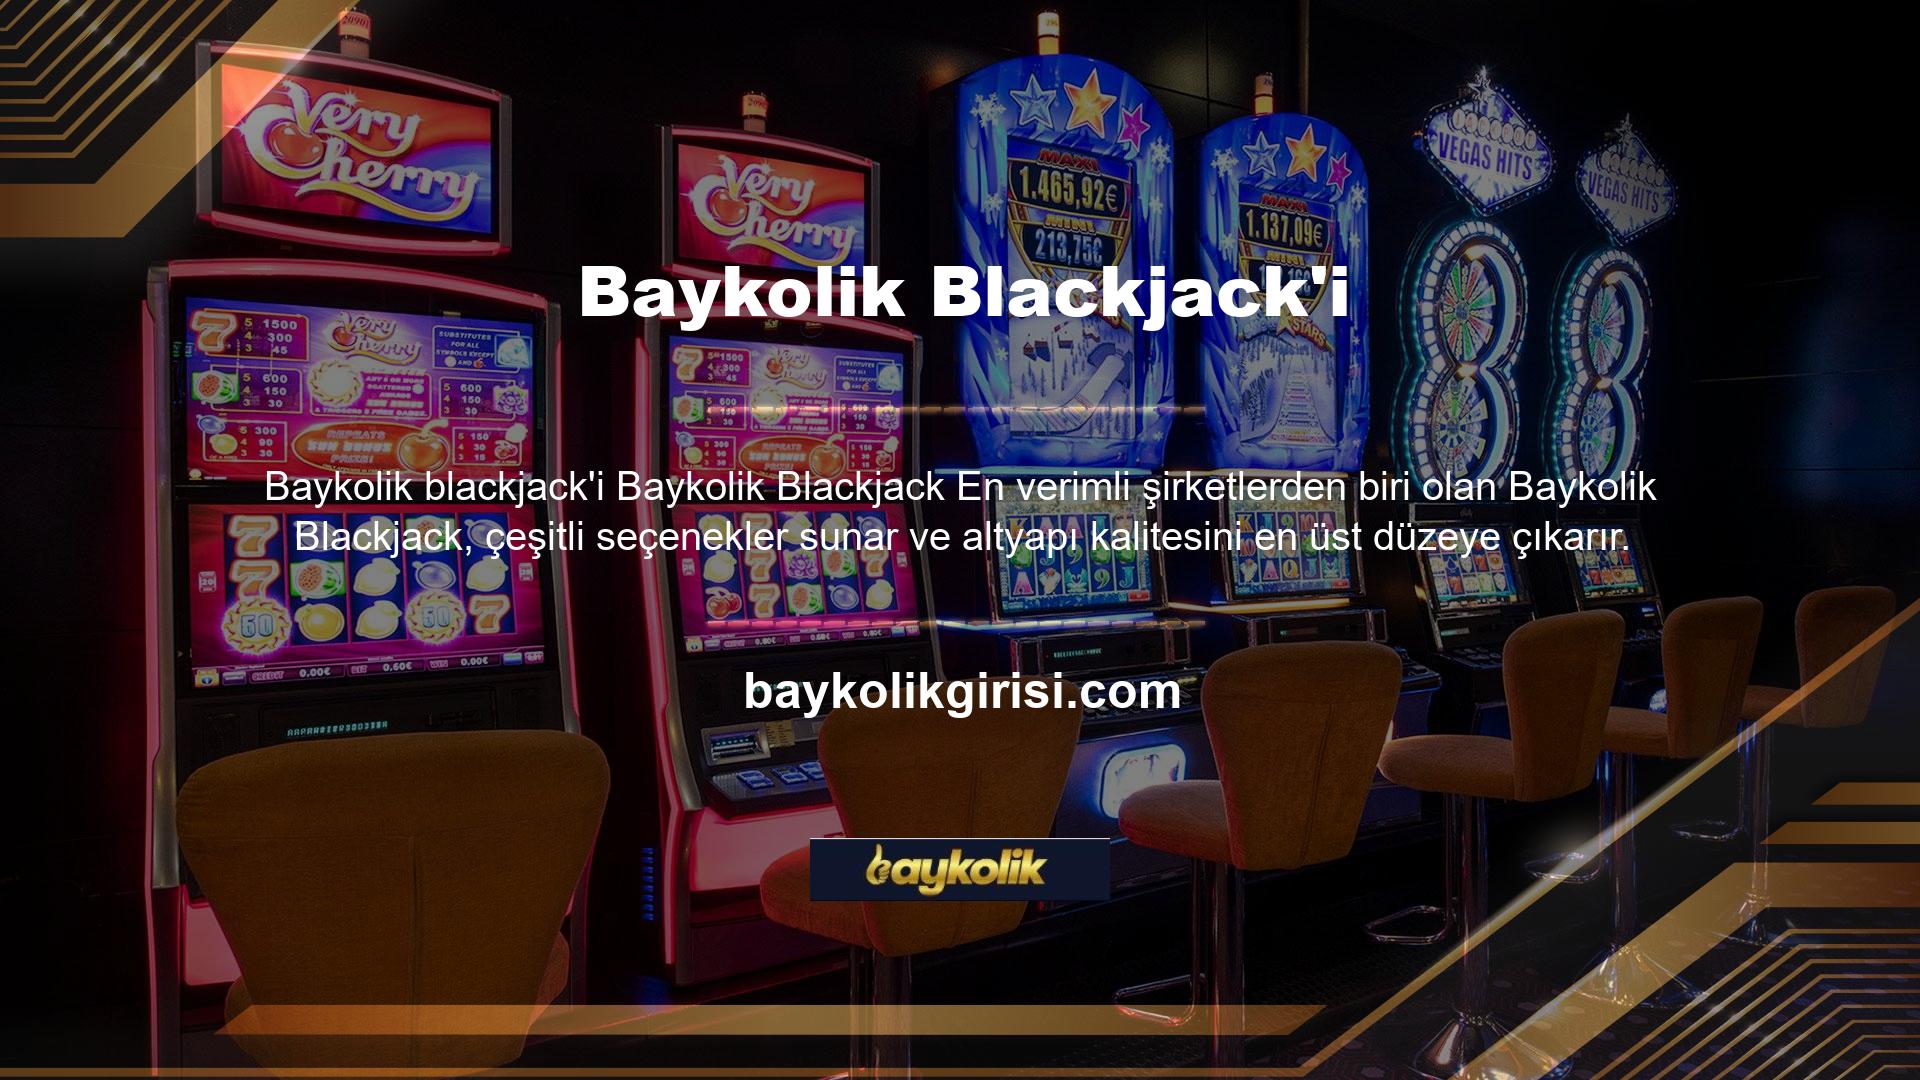 Blackjack, kart ve masa oyunları kategorisinde World 21 olarak bilinen kapsamlı bir strateji oyunudur